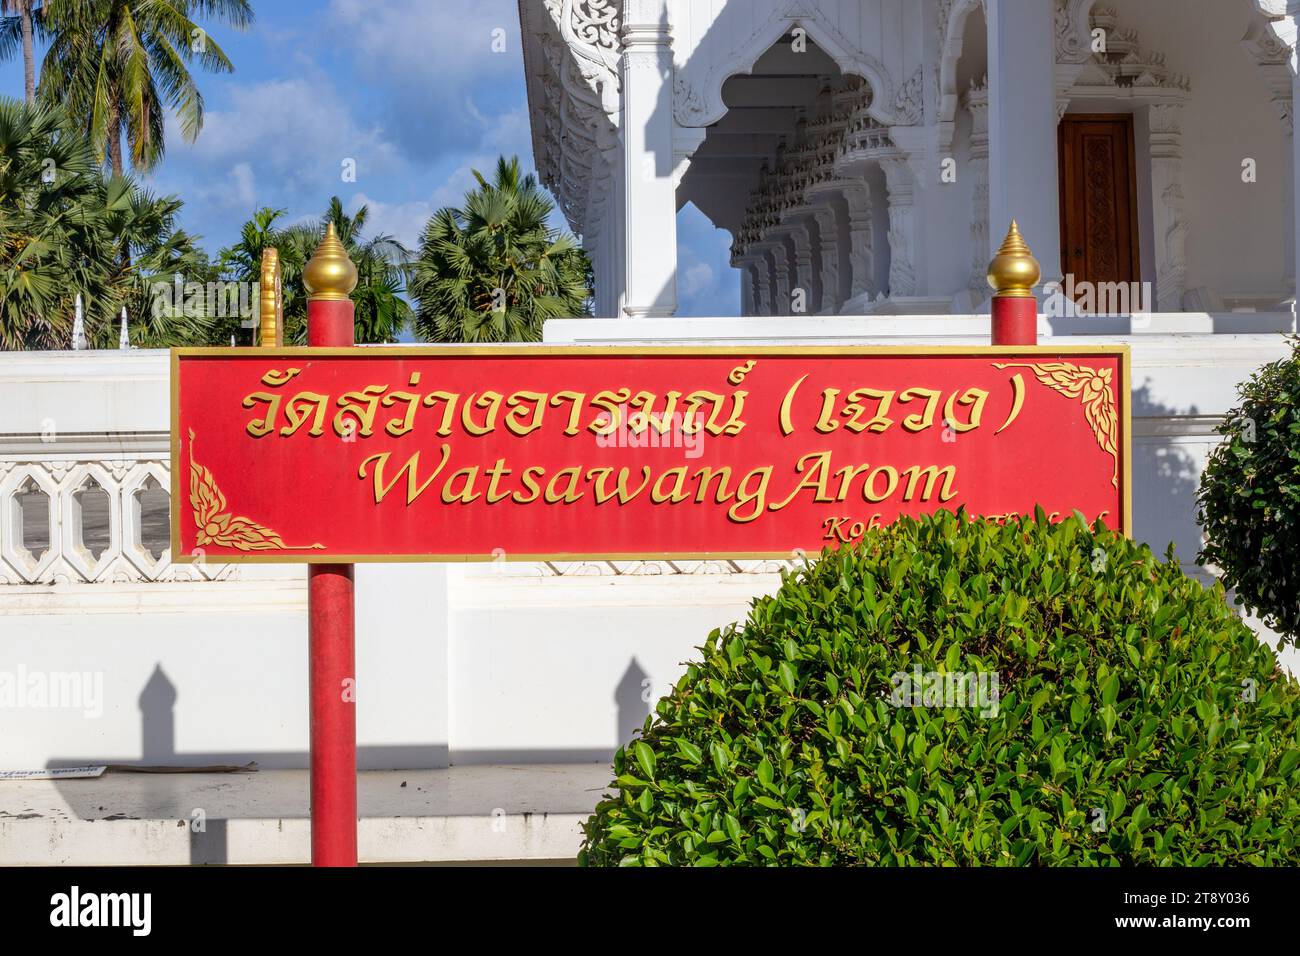 Rotes Schild in der Nähe des Weißen buddhistischen Tempels mit der Inschrift Wat Sawang Arom. Stockfoto